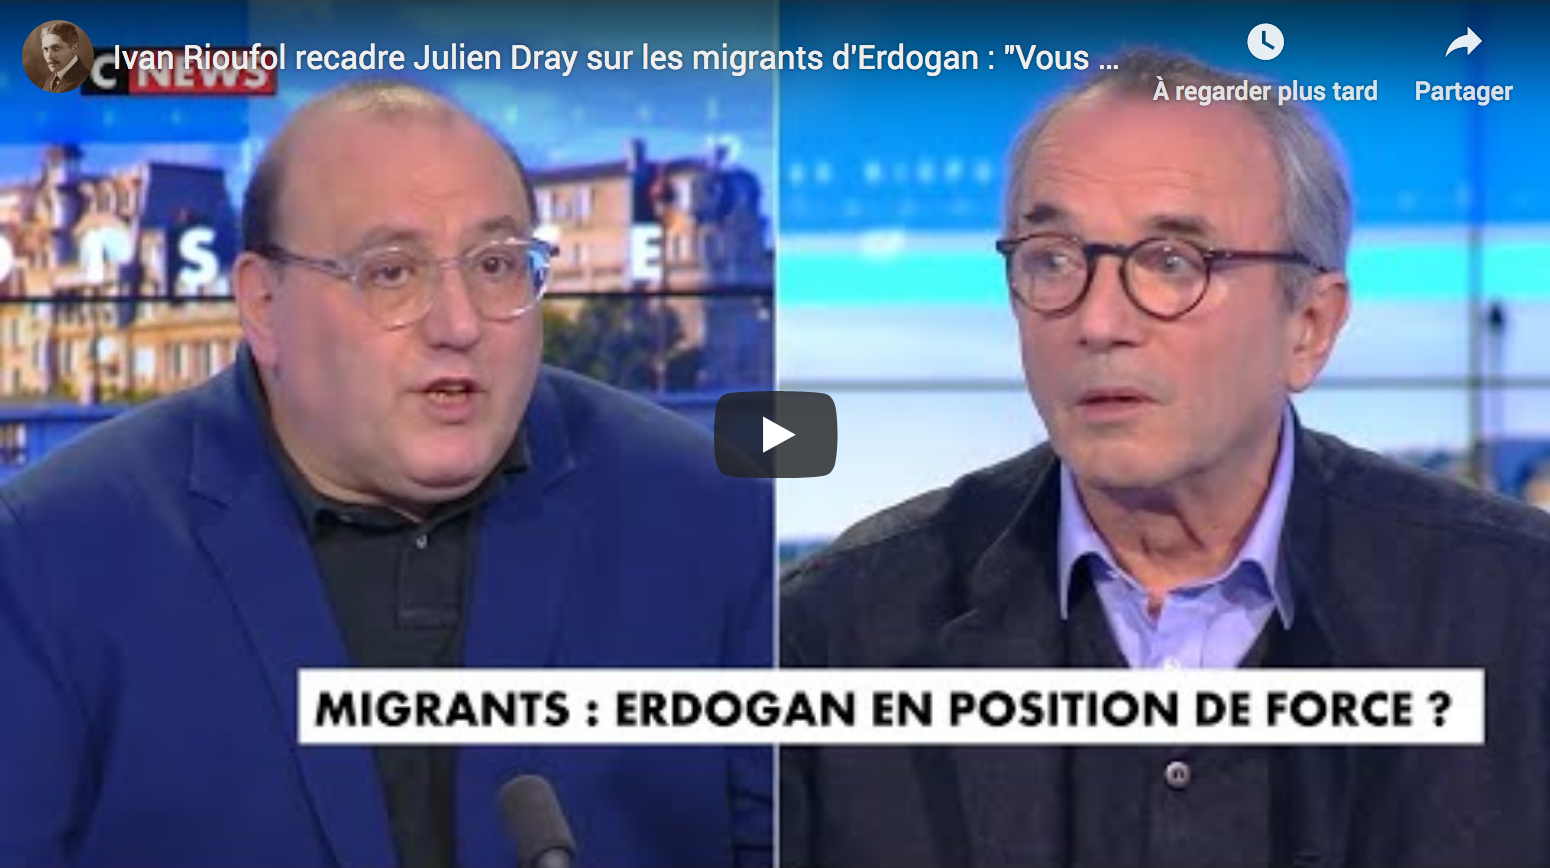 Ivan Rioufol rembarre Julien Dray sur les migrants d’Erdogan : “Vous vouliez la Turquie dans l’UE !” (DÉBAT)